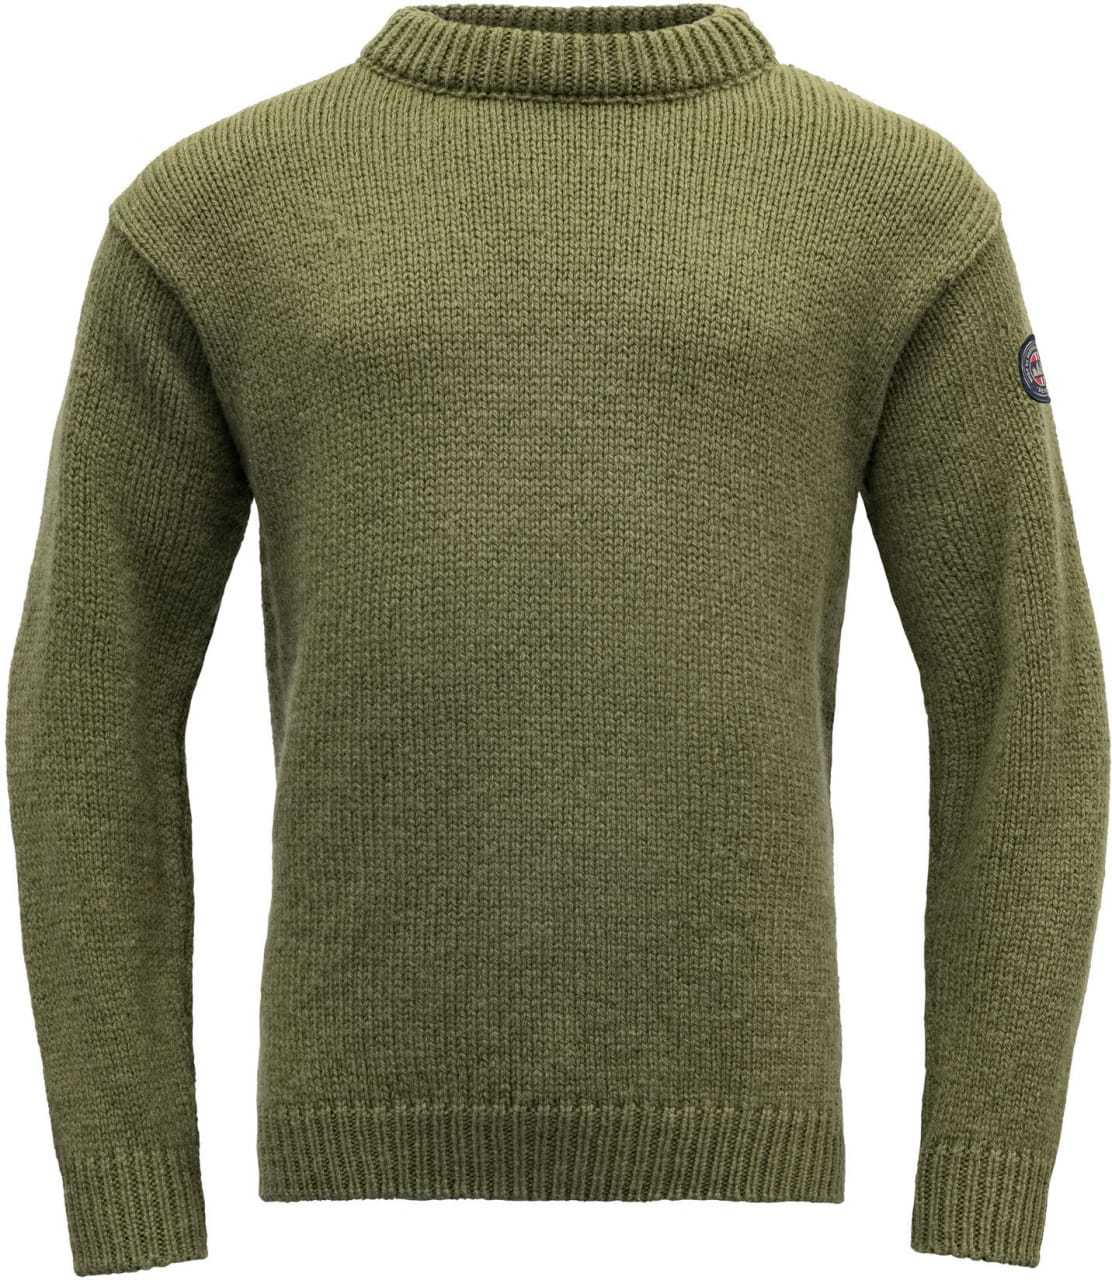 Jersey de invierno unisex Devold Nansen Wool Sweater